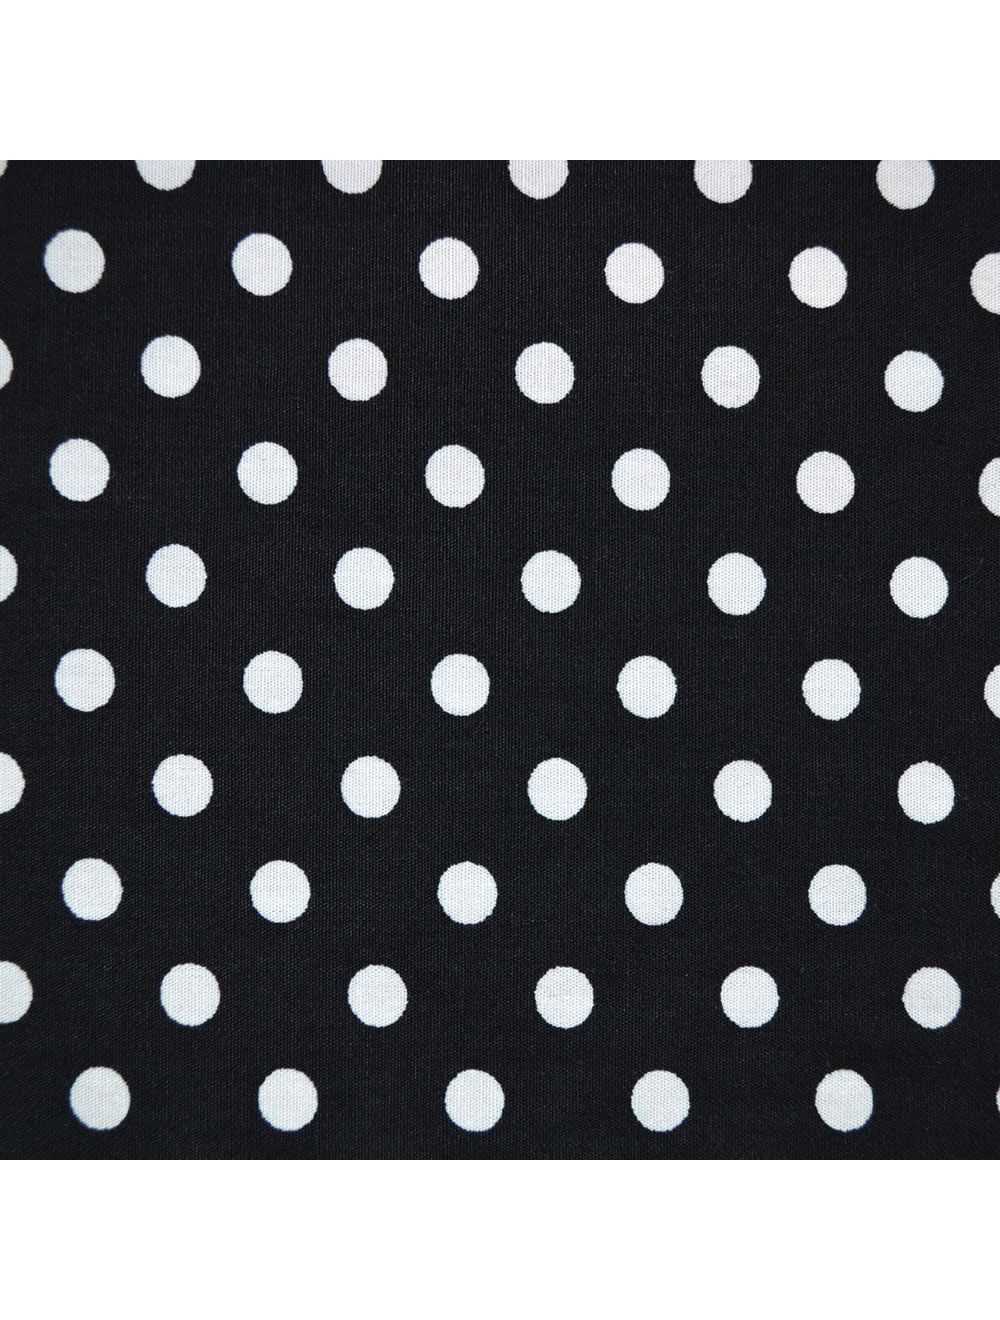 White & Gray Polka Dots Fabric Grocery Plastic Bag Holder Dispenser 